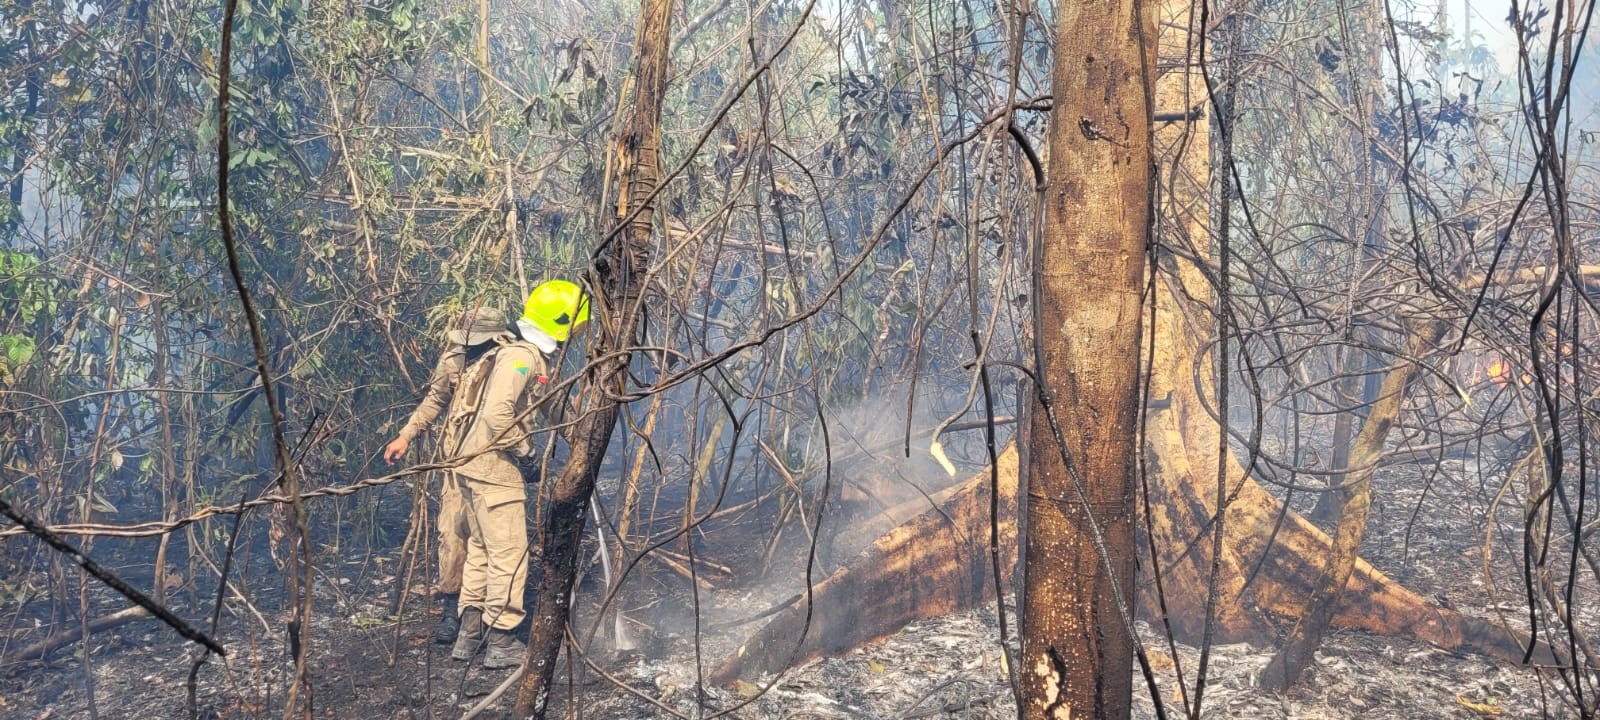 Ação civil pública pede convocação de bombeiros aprovados em concurso para ajudar no combate às queimadas no Acre